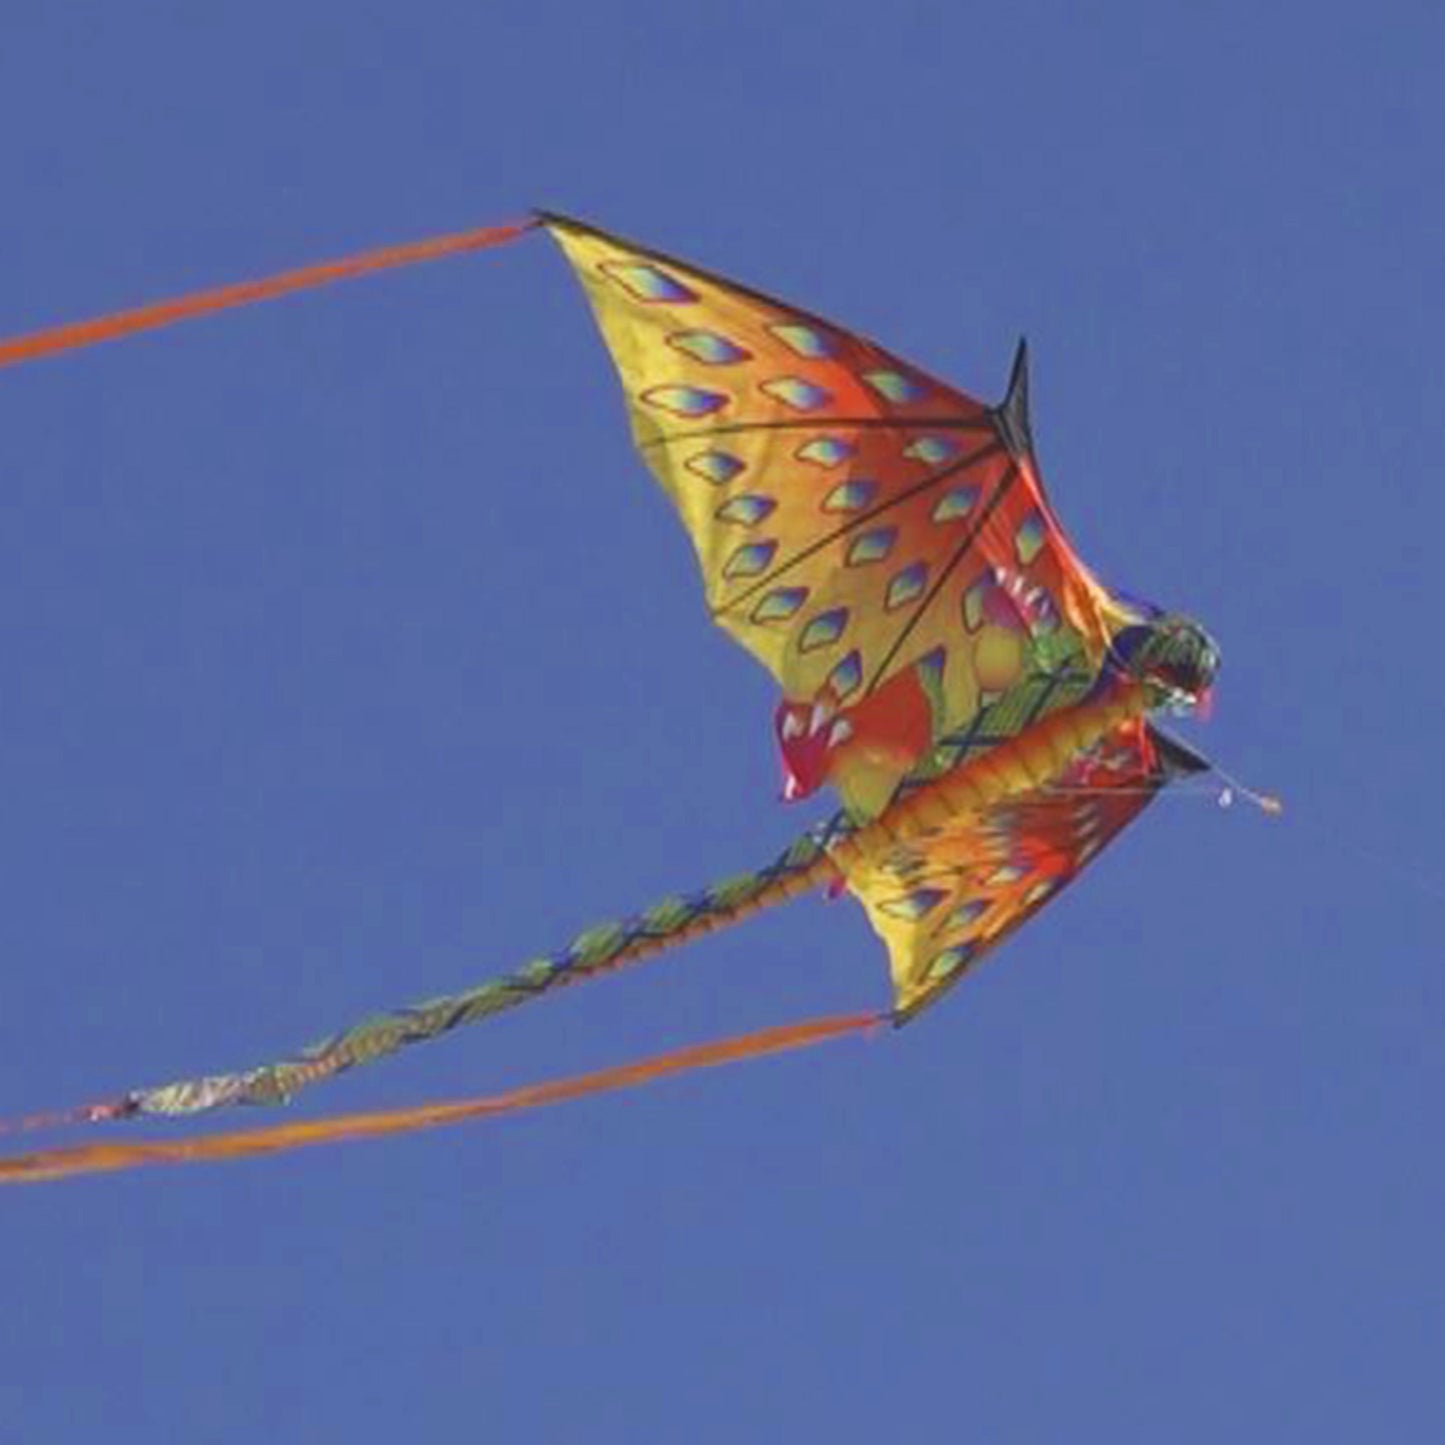 windnsun supersize 3d green dragon nylon kite flying